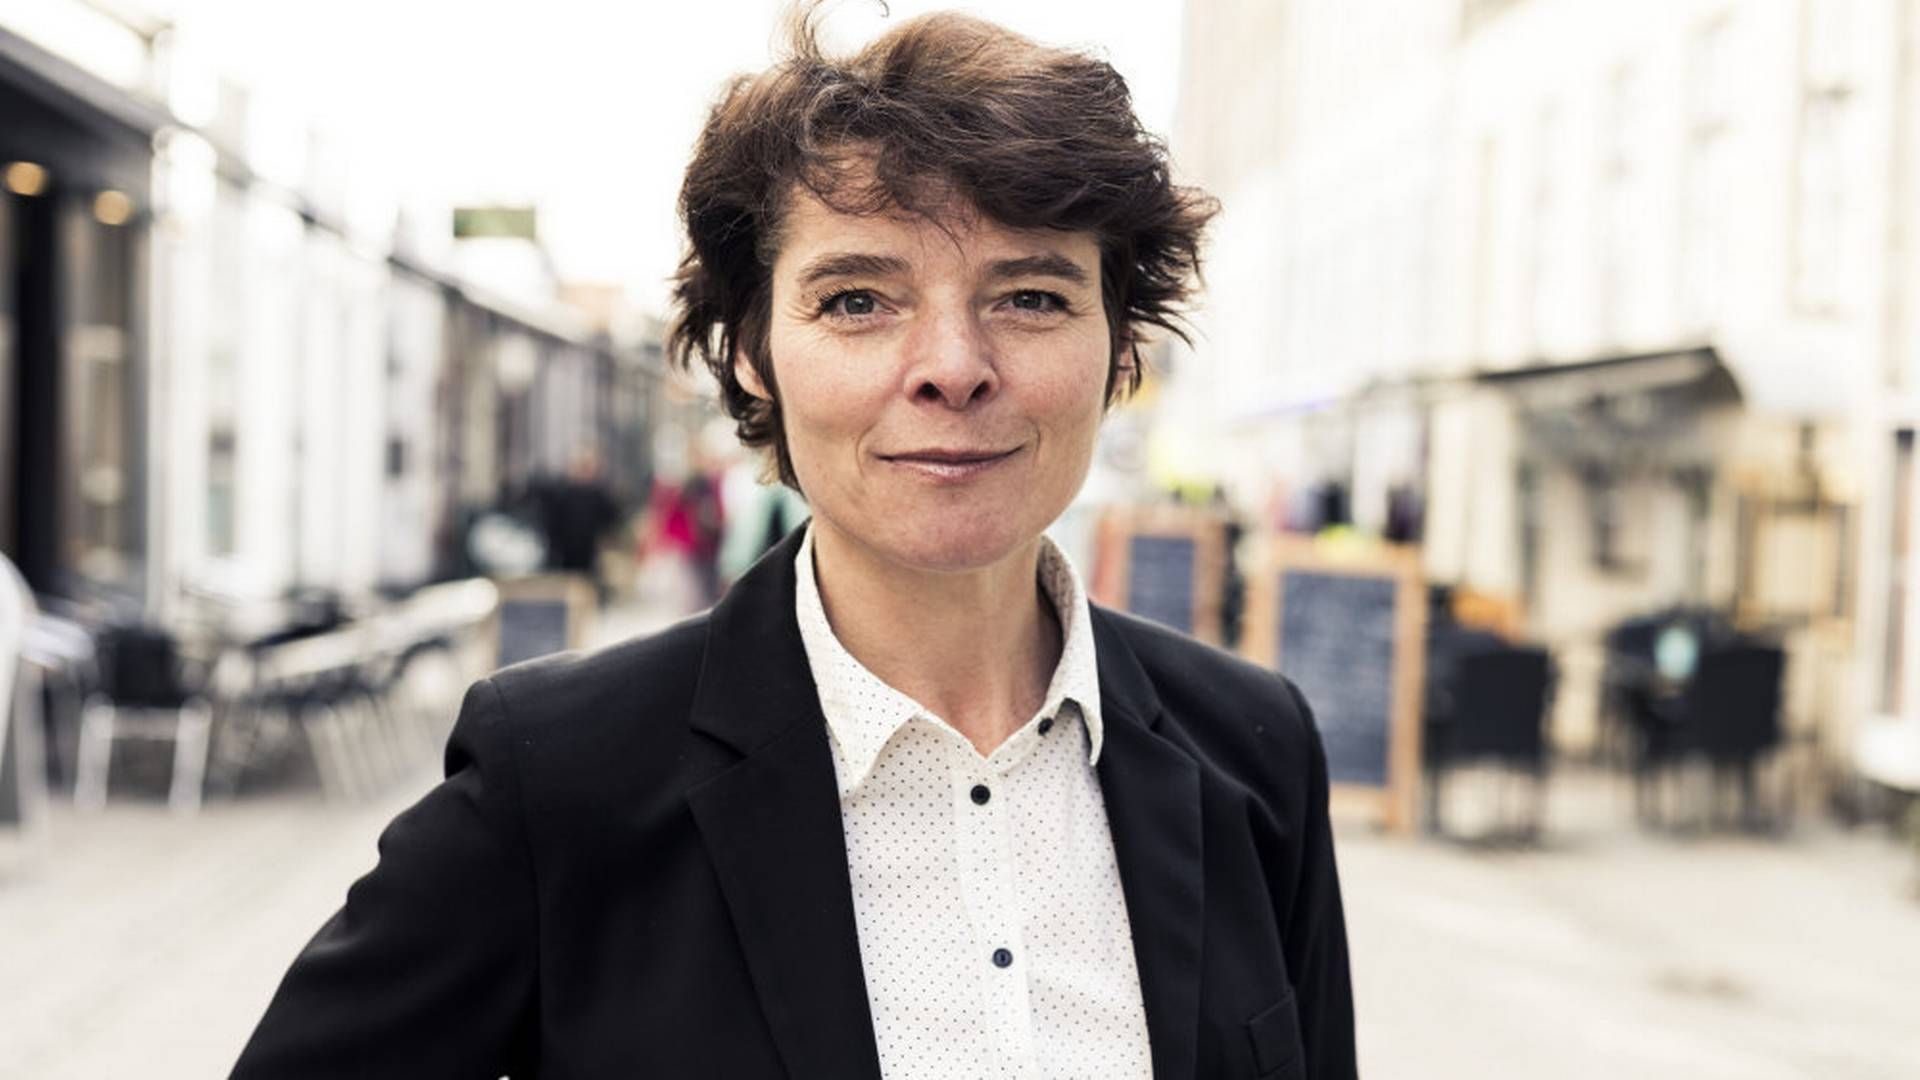 Anja Philip har været formand for Forbrugerrådet Tænk i 12 år. 23. april fratræder hun. (Arkivfoto). | Foto: Morten Germund/Ritzau Scanpix